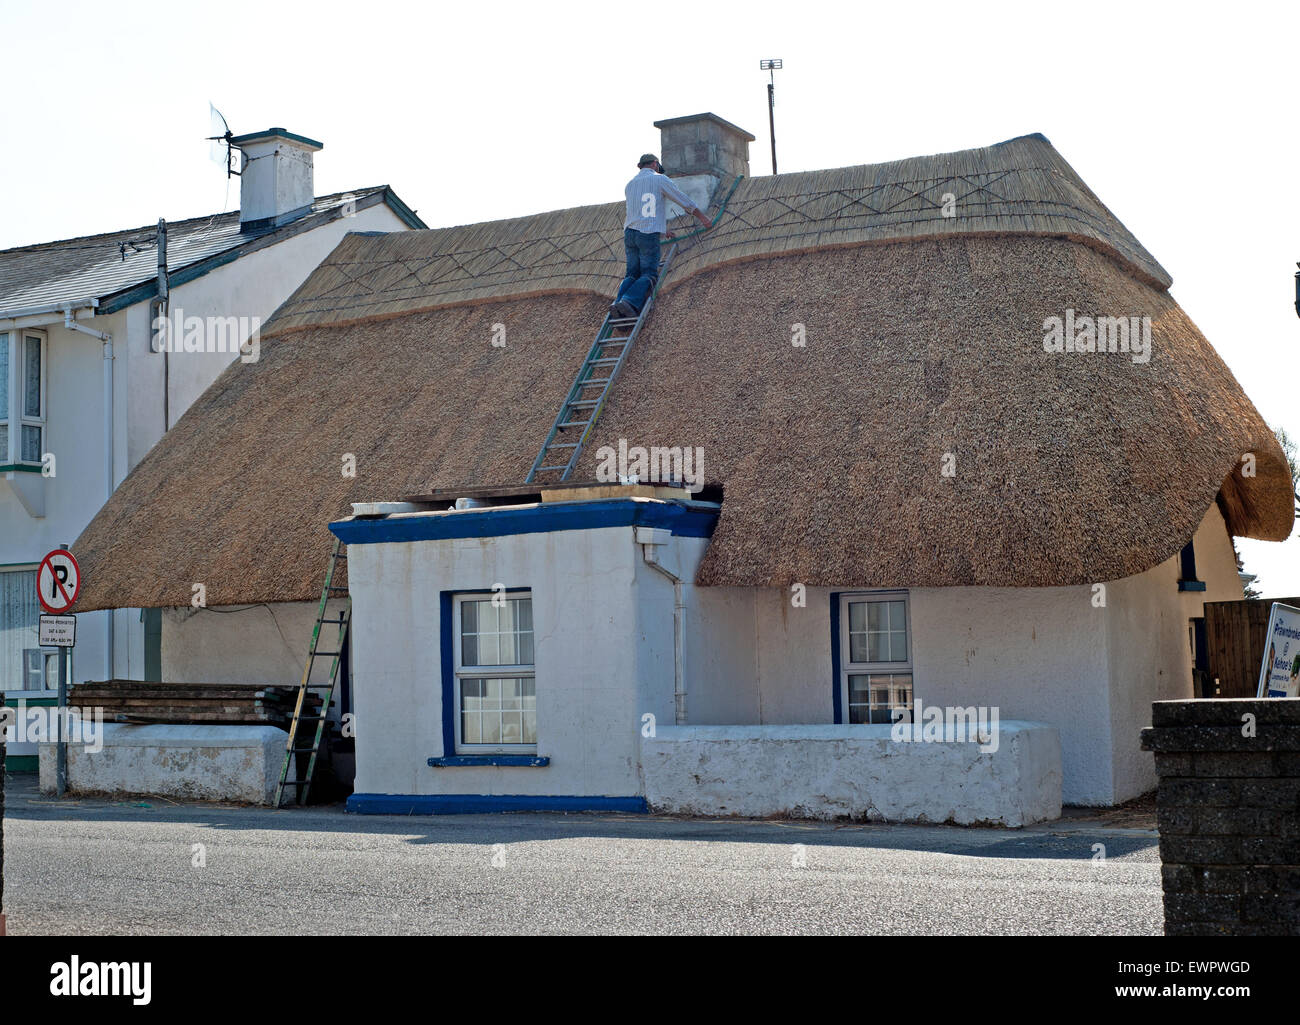 L'Irlande, le comté de Wexford, Kilmore Quay House (anciennement la maison en bois), l'homme travaillant sur toit de paille Banque D'Images